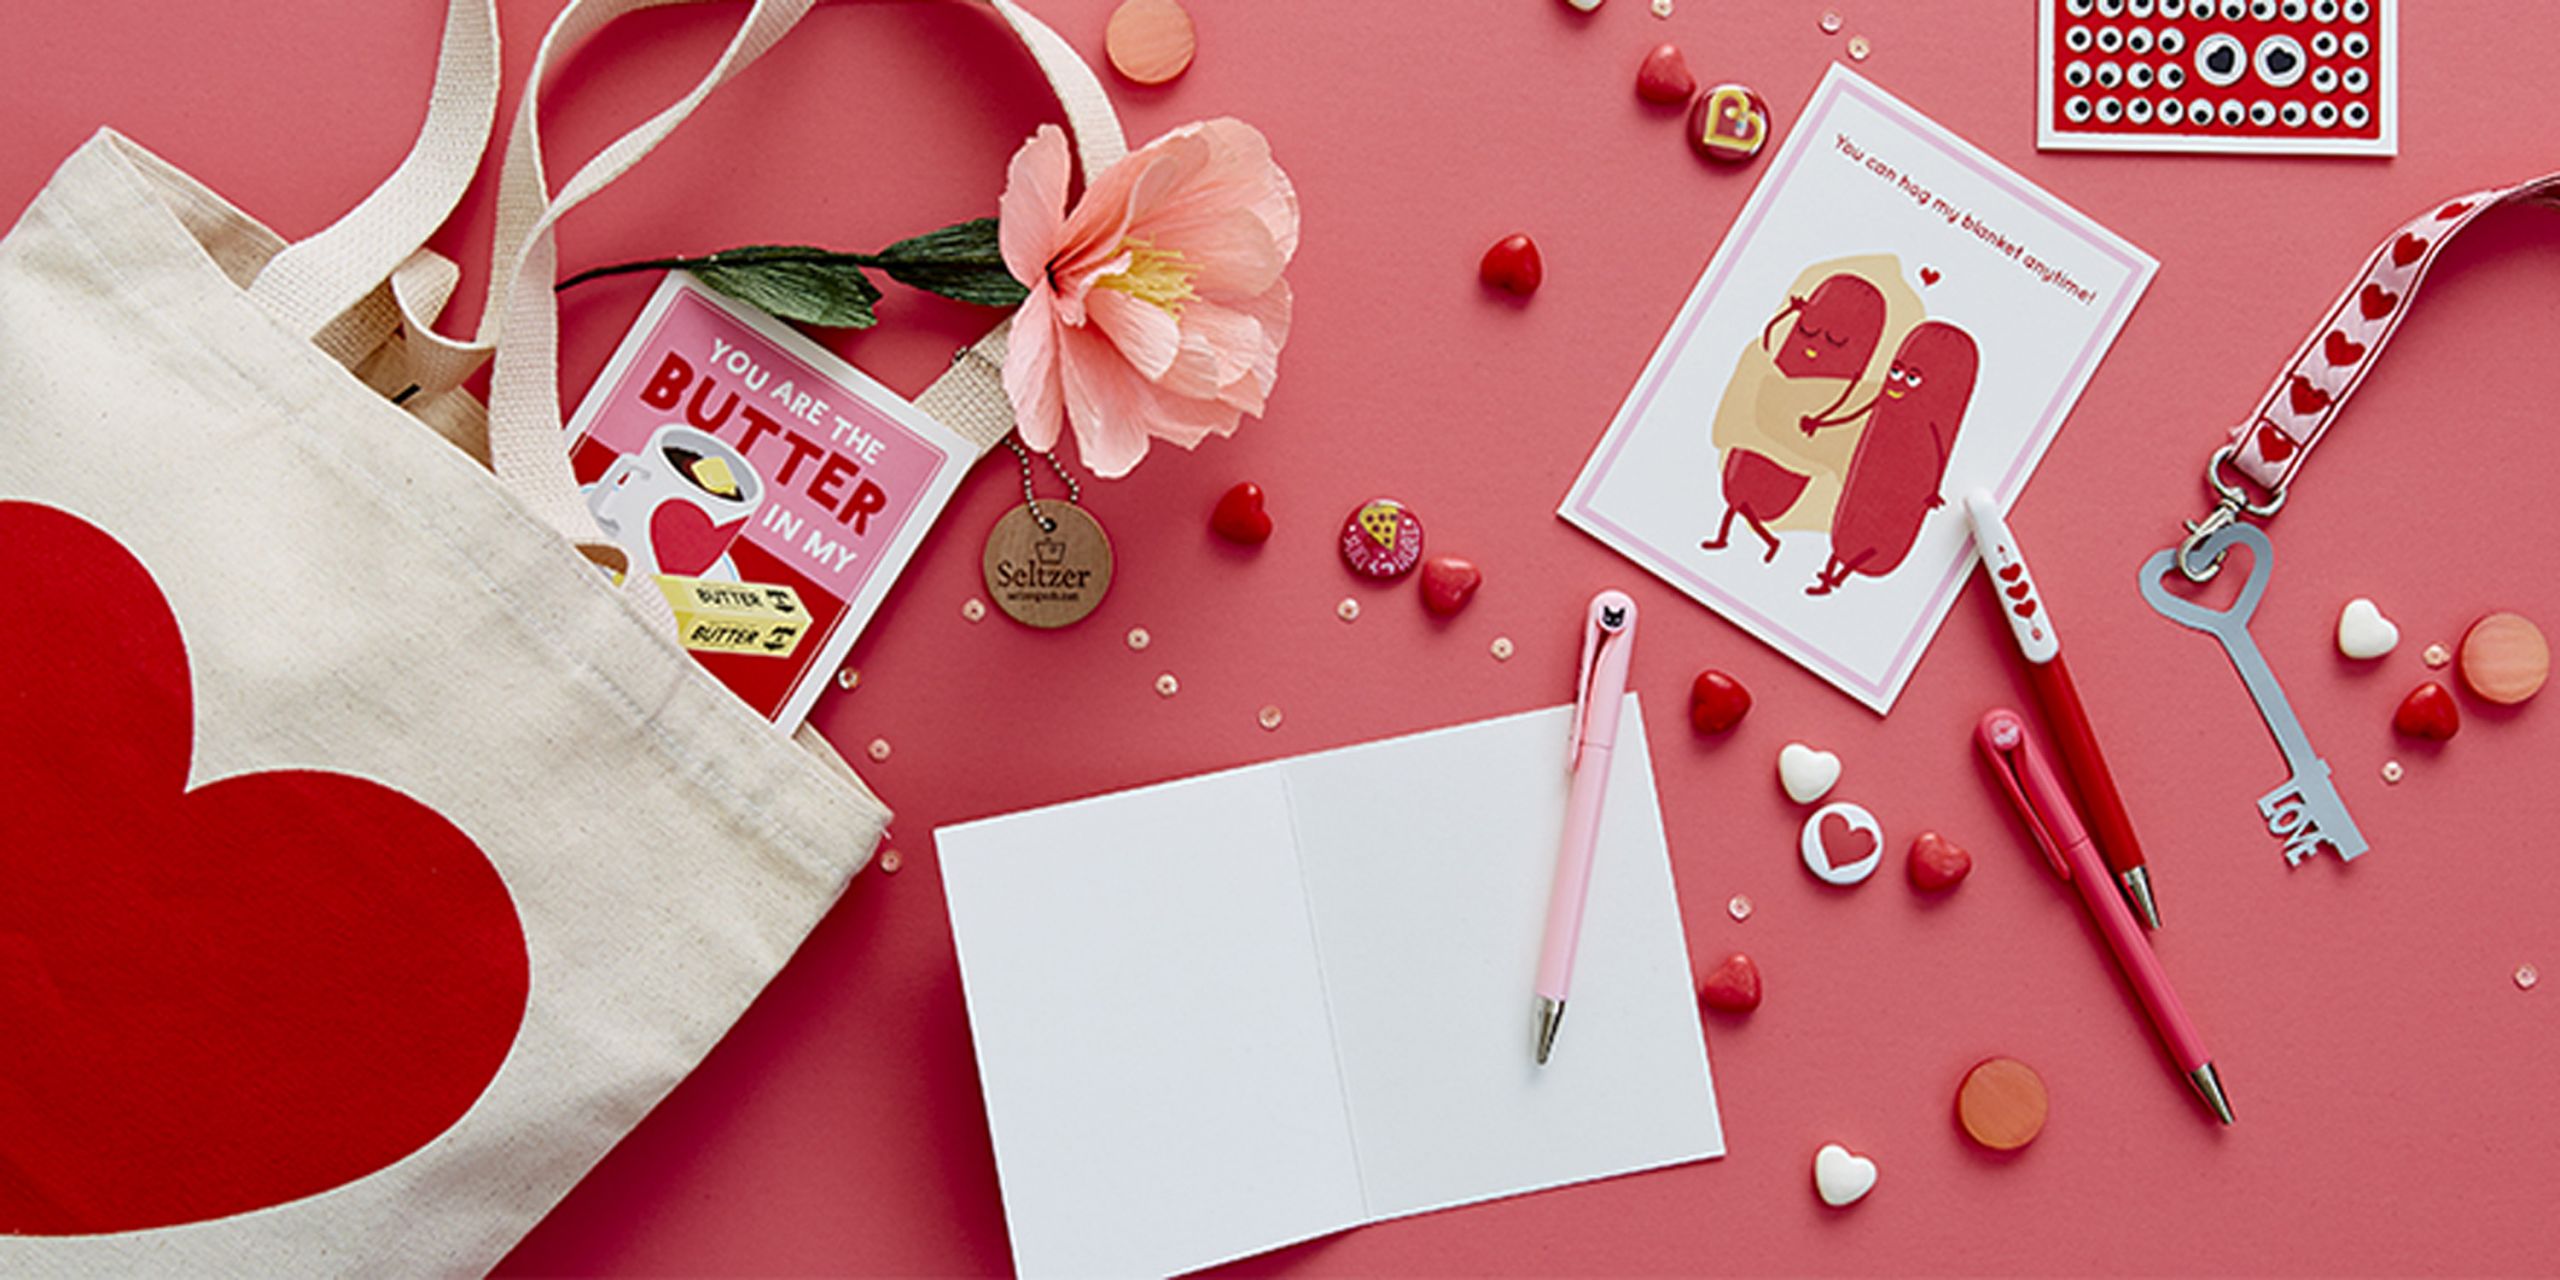 Valentine Day Gift Ideas For Her
 2017 Valentine s Day Gift Ideas for Him and Her Romantic